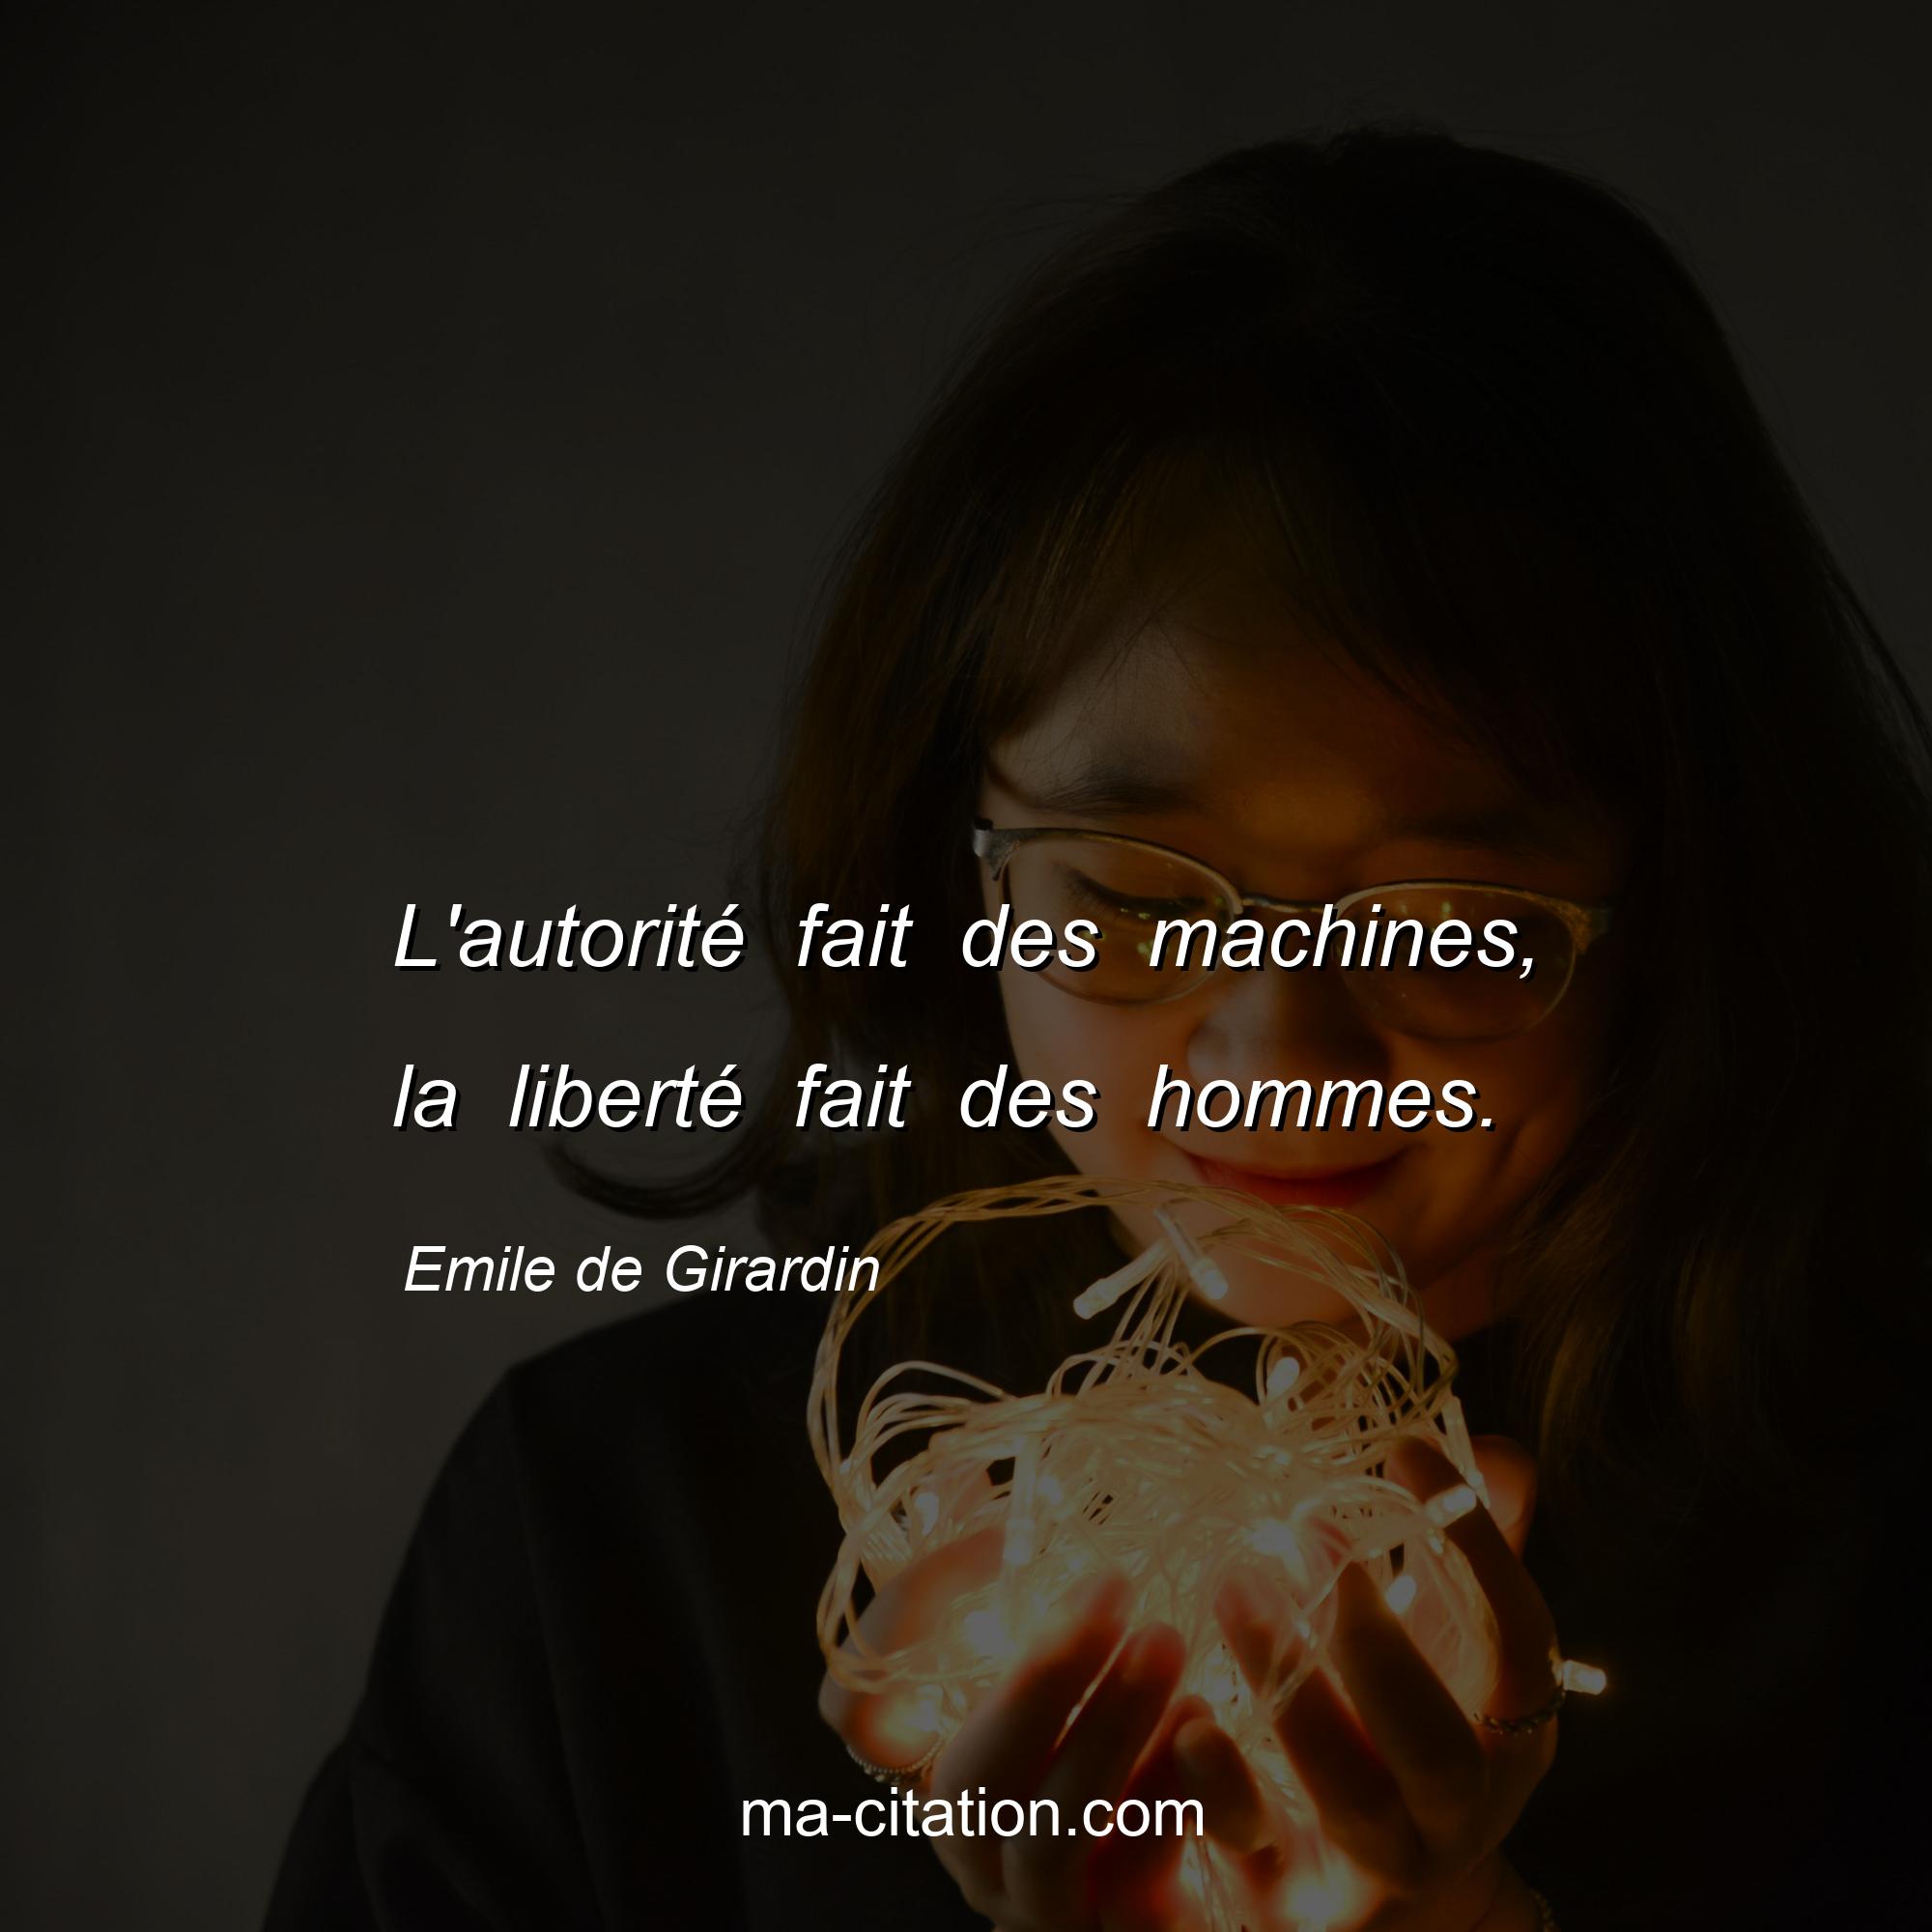 Emile de Girardin : L'autorité fait des machines, la liberté fait des hommes.